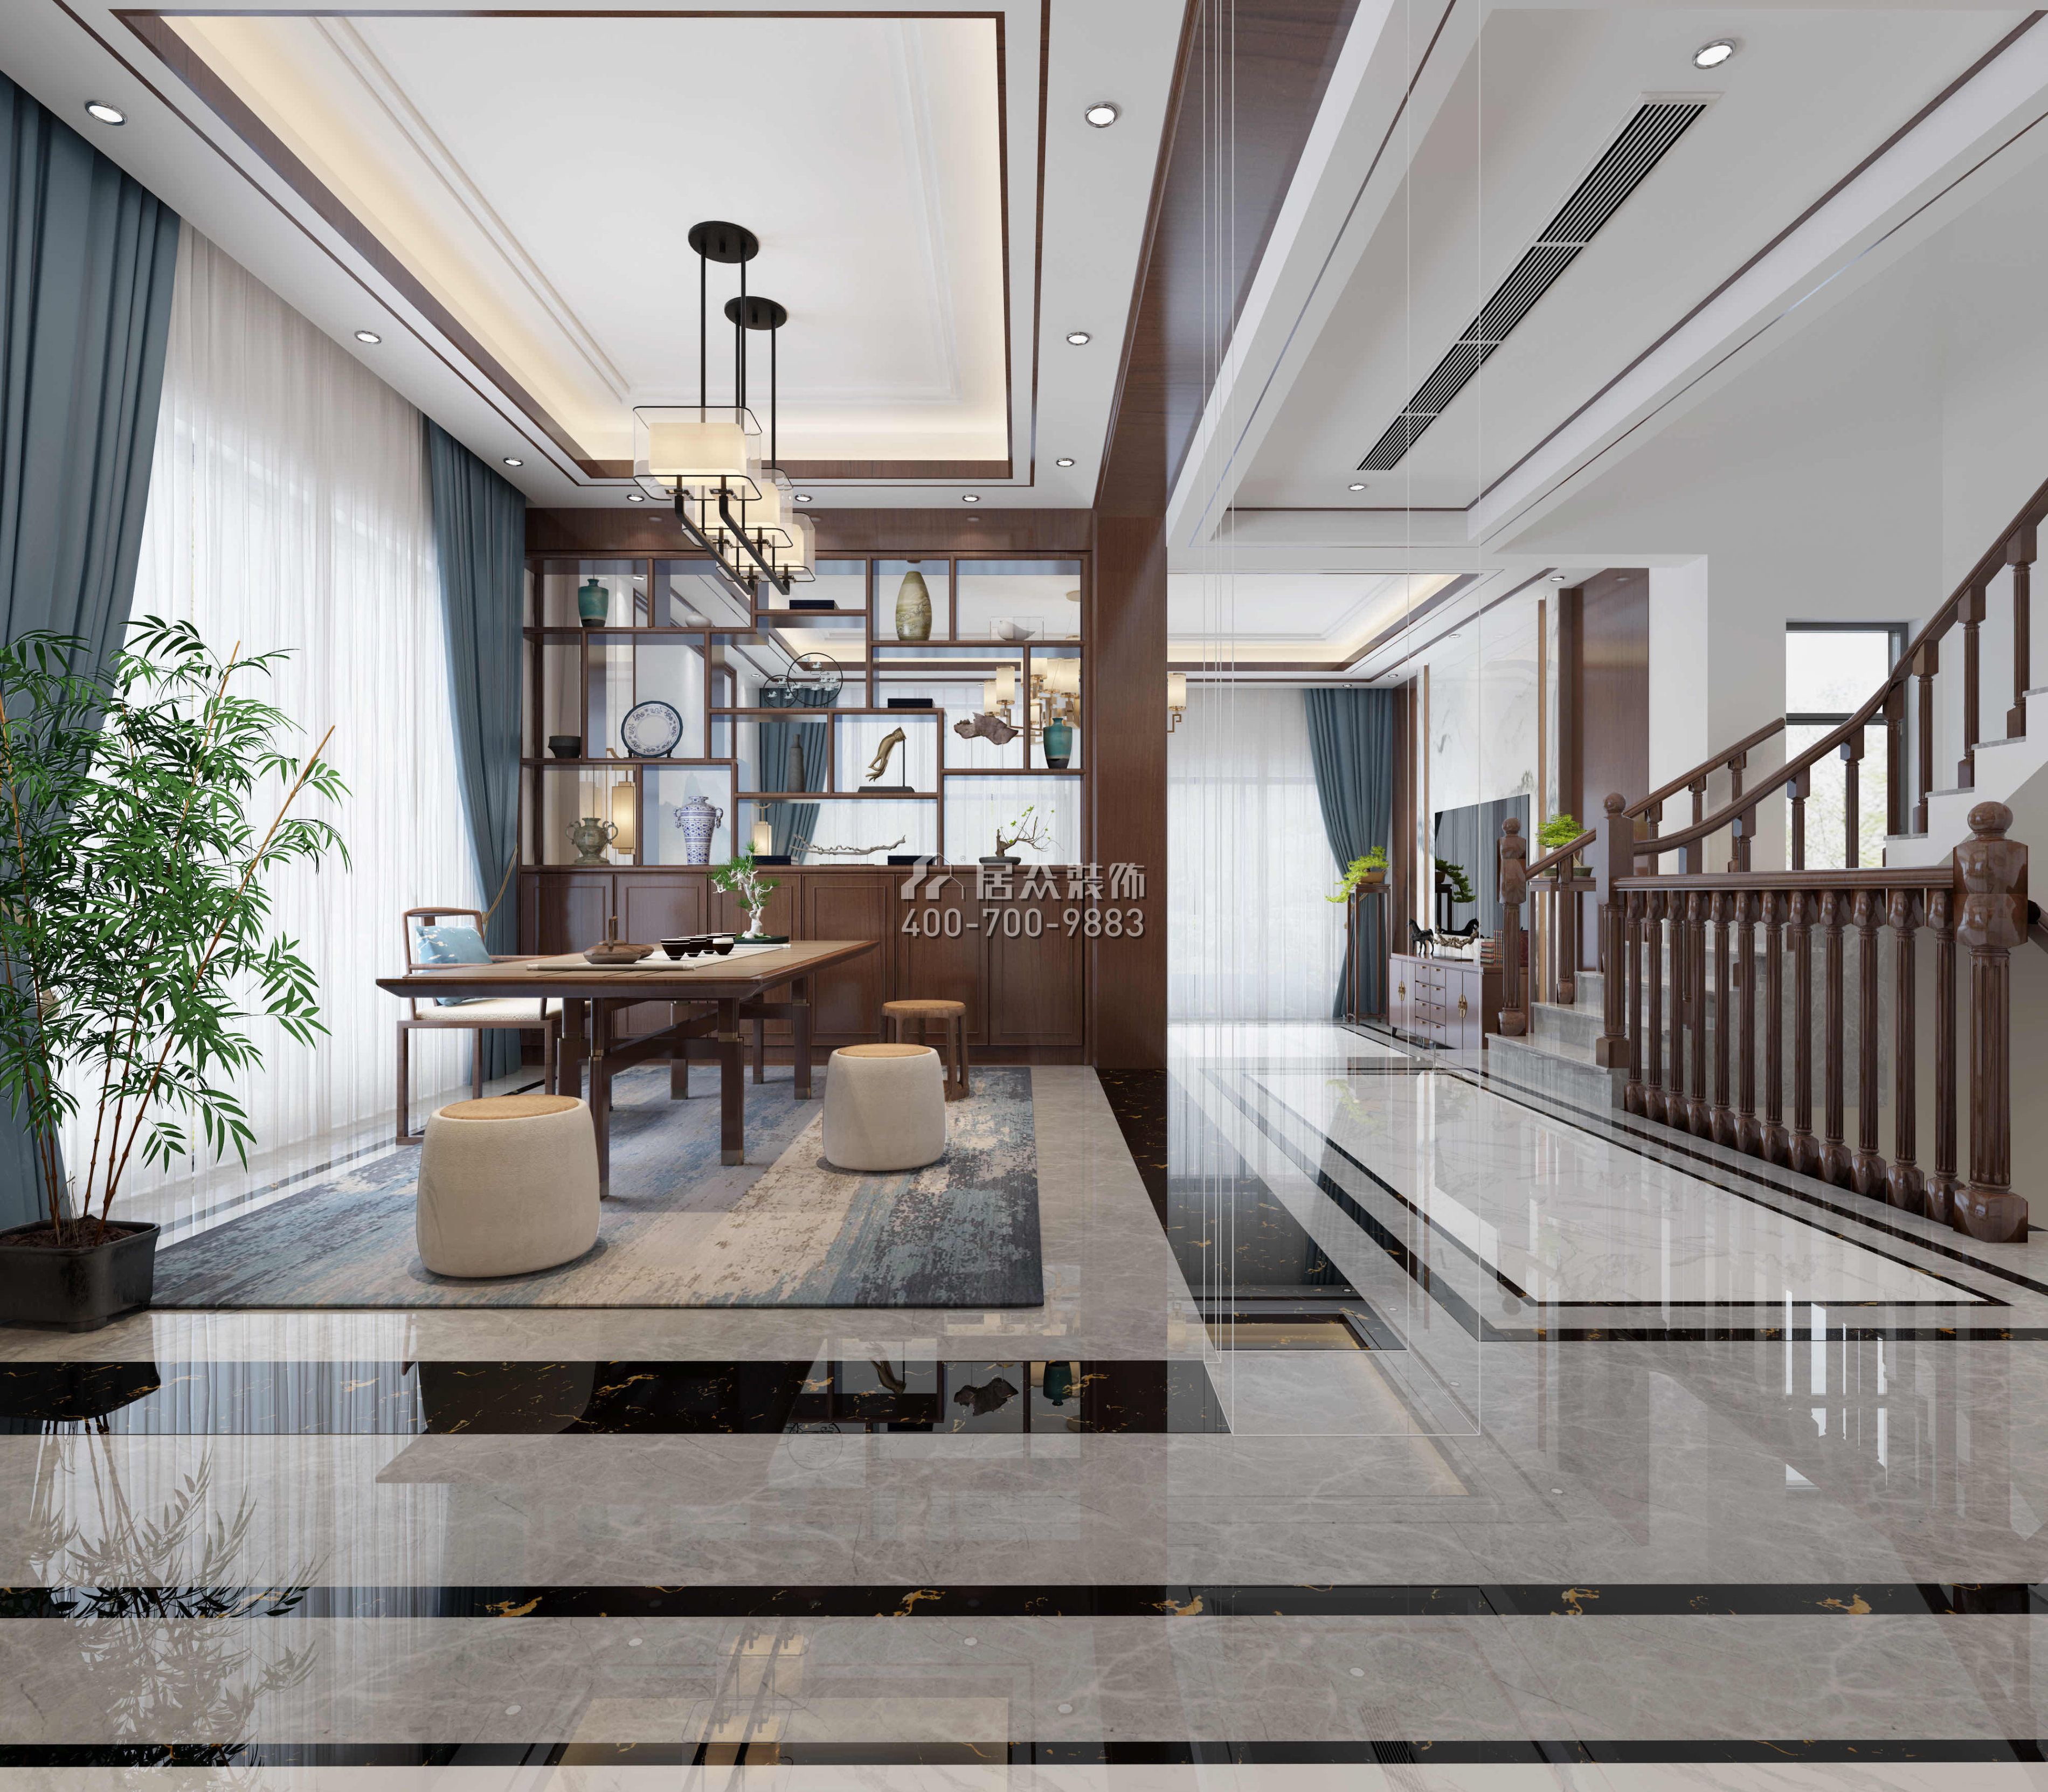 华发新城480平方米中式风格别墅户型茶室装修效果图